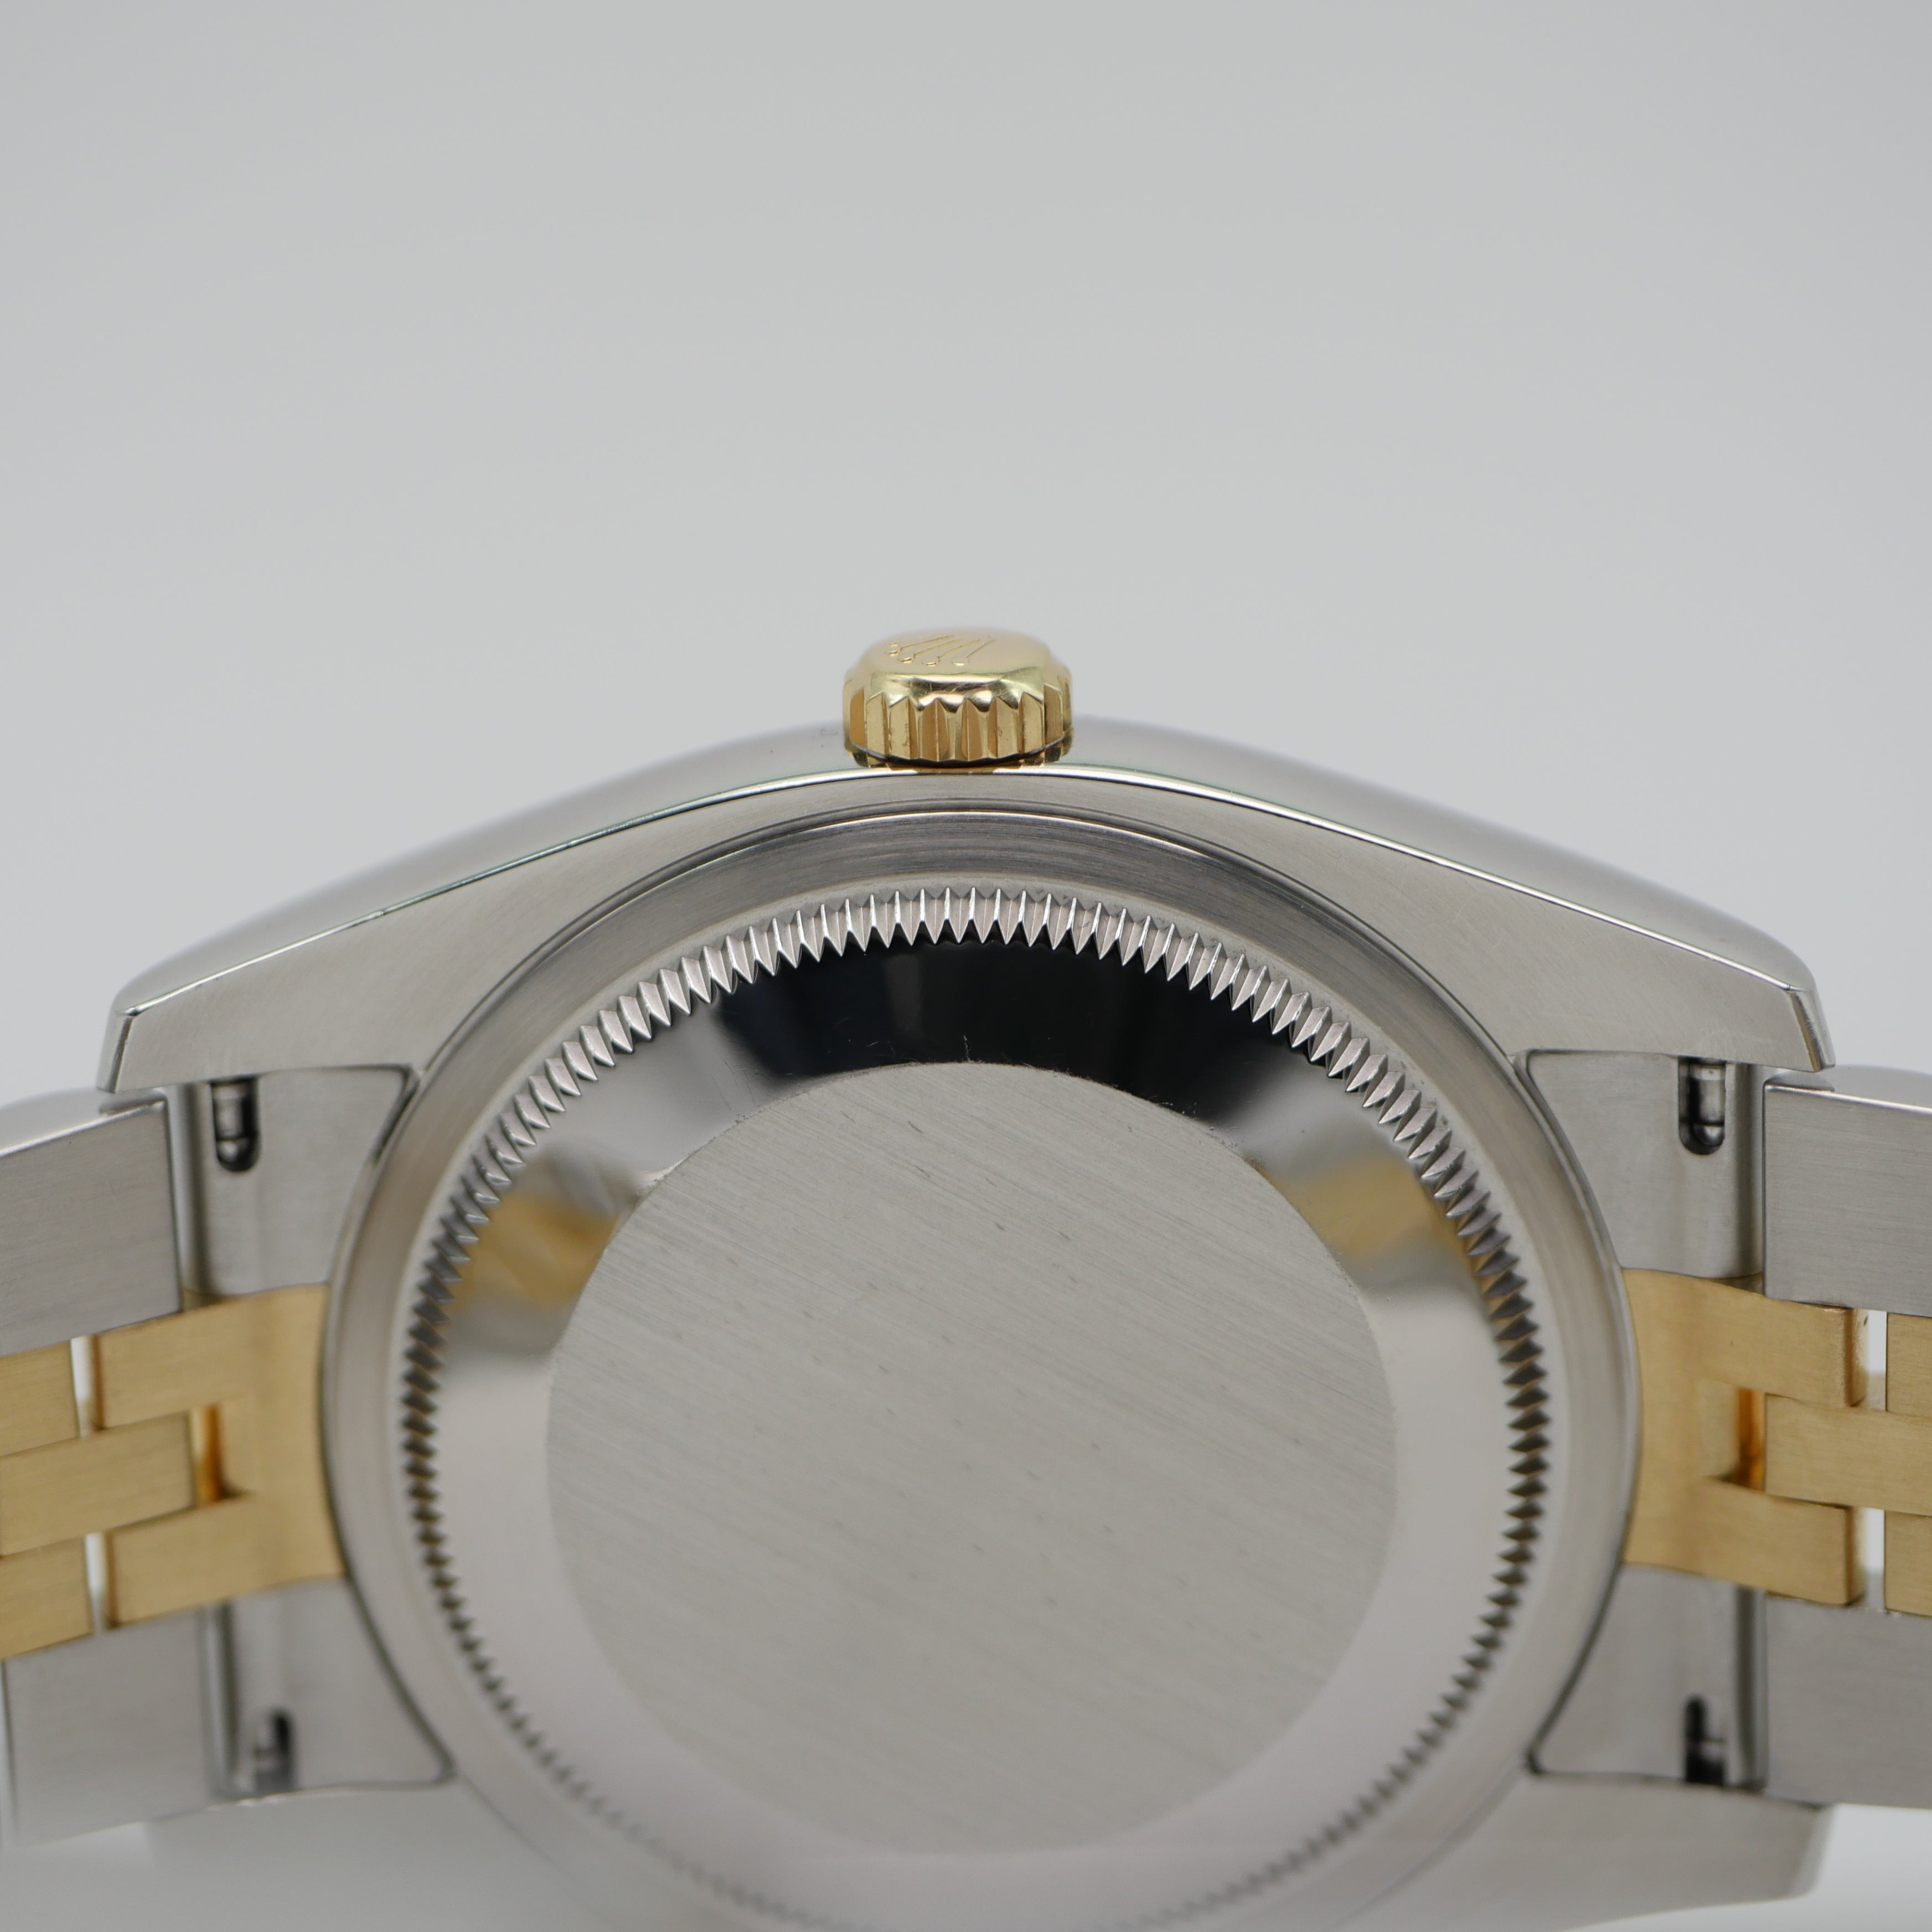 Rolex Datejust 36mm Stahl / Gelbgold 116233 - 2011